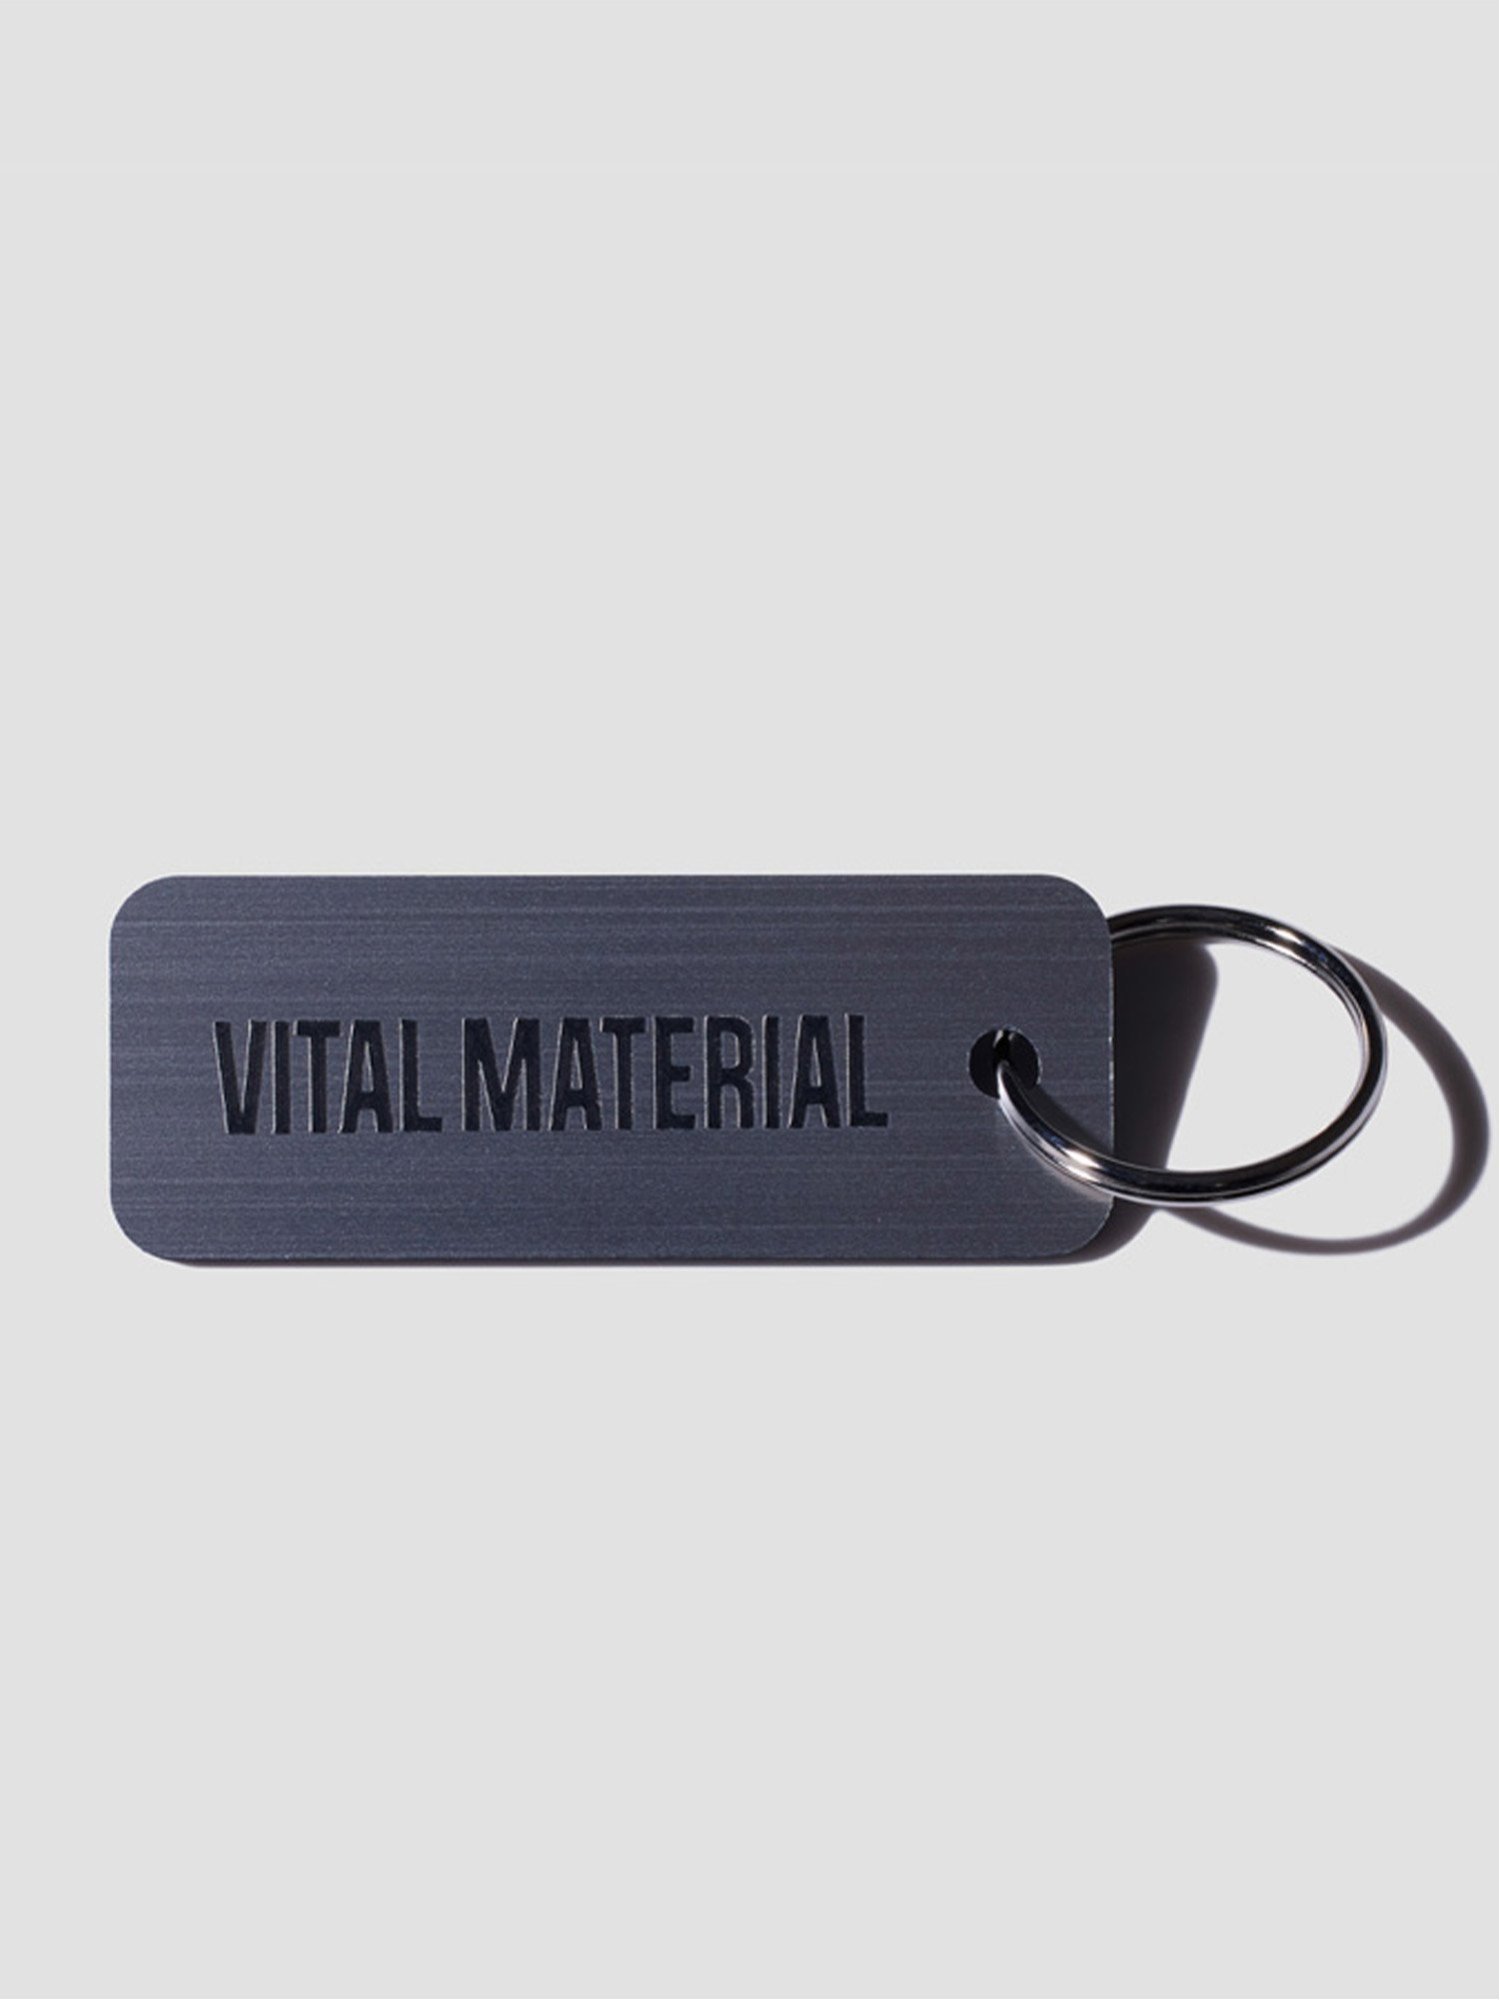 楽天Rakuten FashionVITAL MATERIAL VITAL MATERIAL × Various Keytags BR. ALUMINUM / BLACK ヴァイタル マテリアル ファッション雑貨 チャーム・キーチェーン グレー